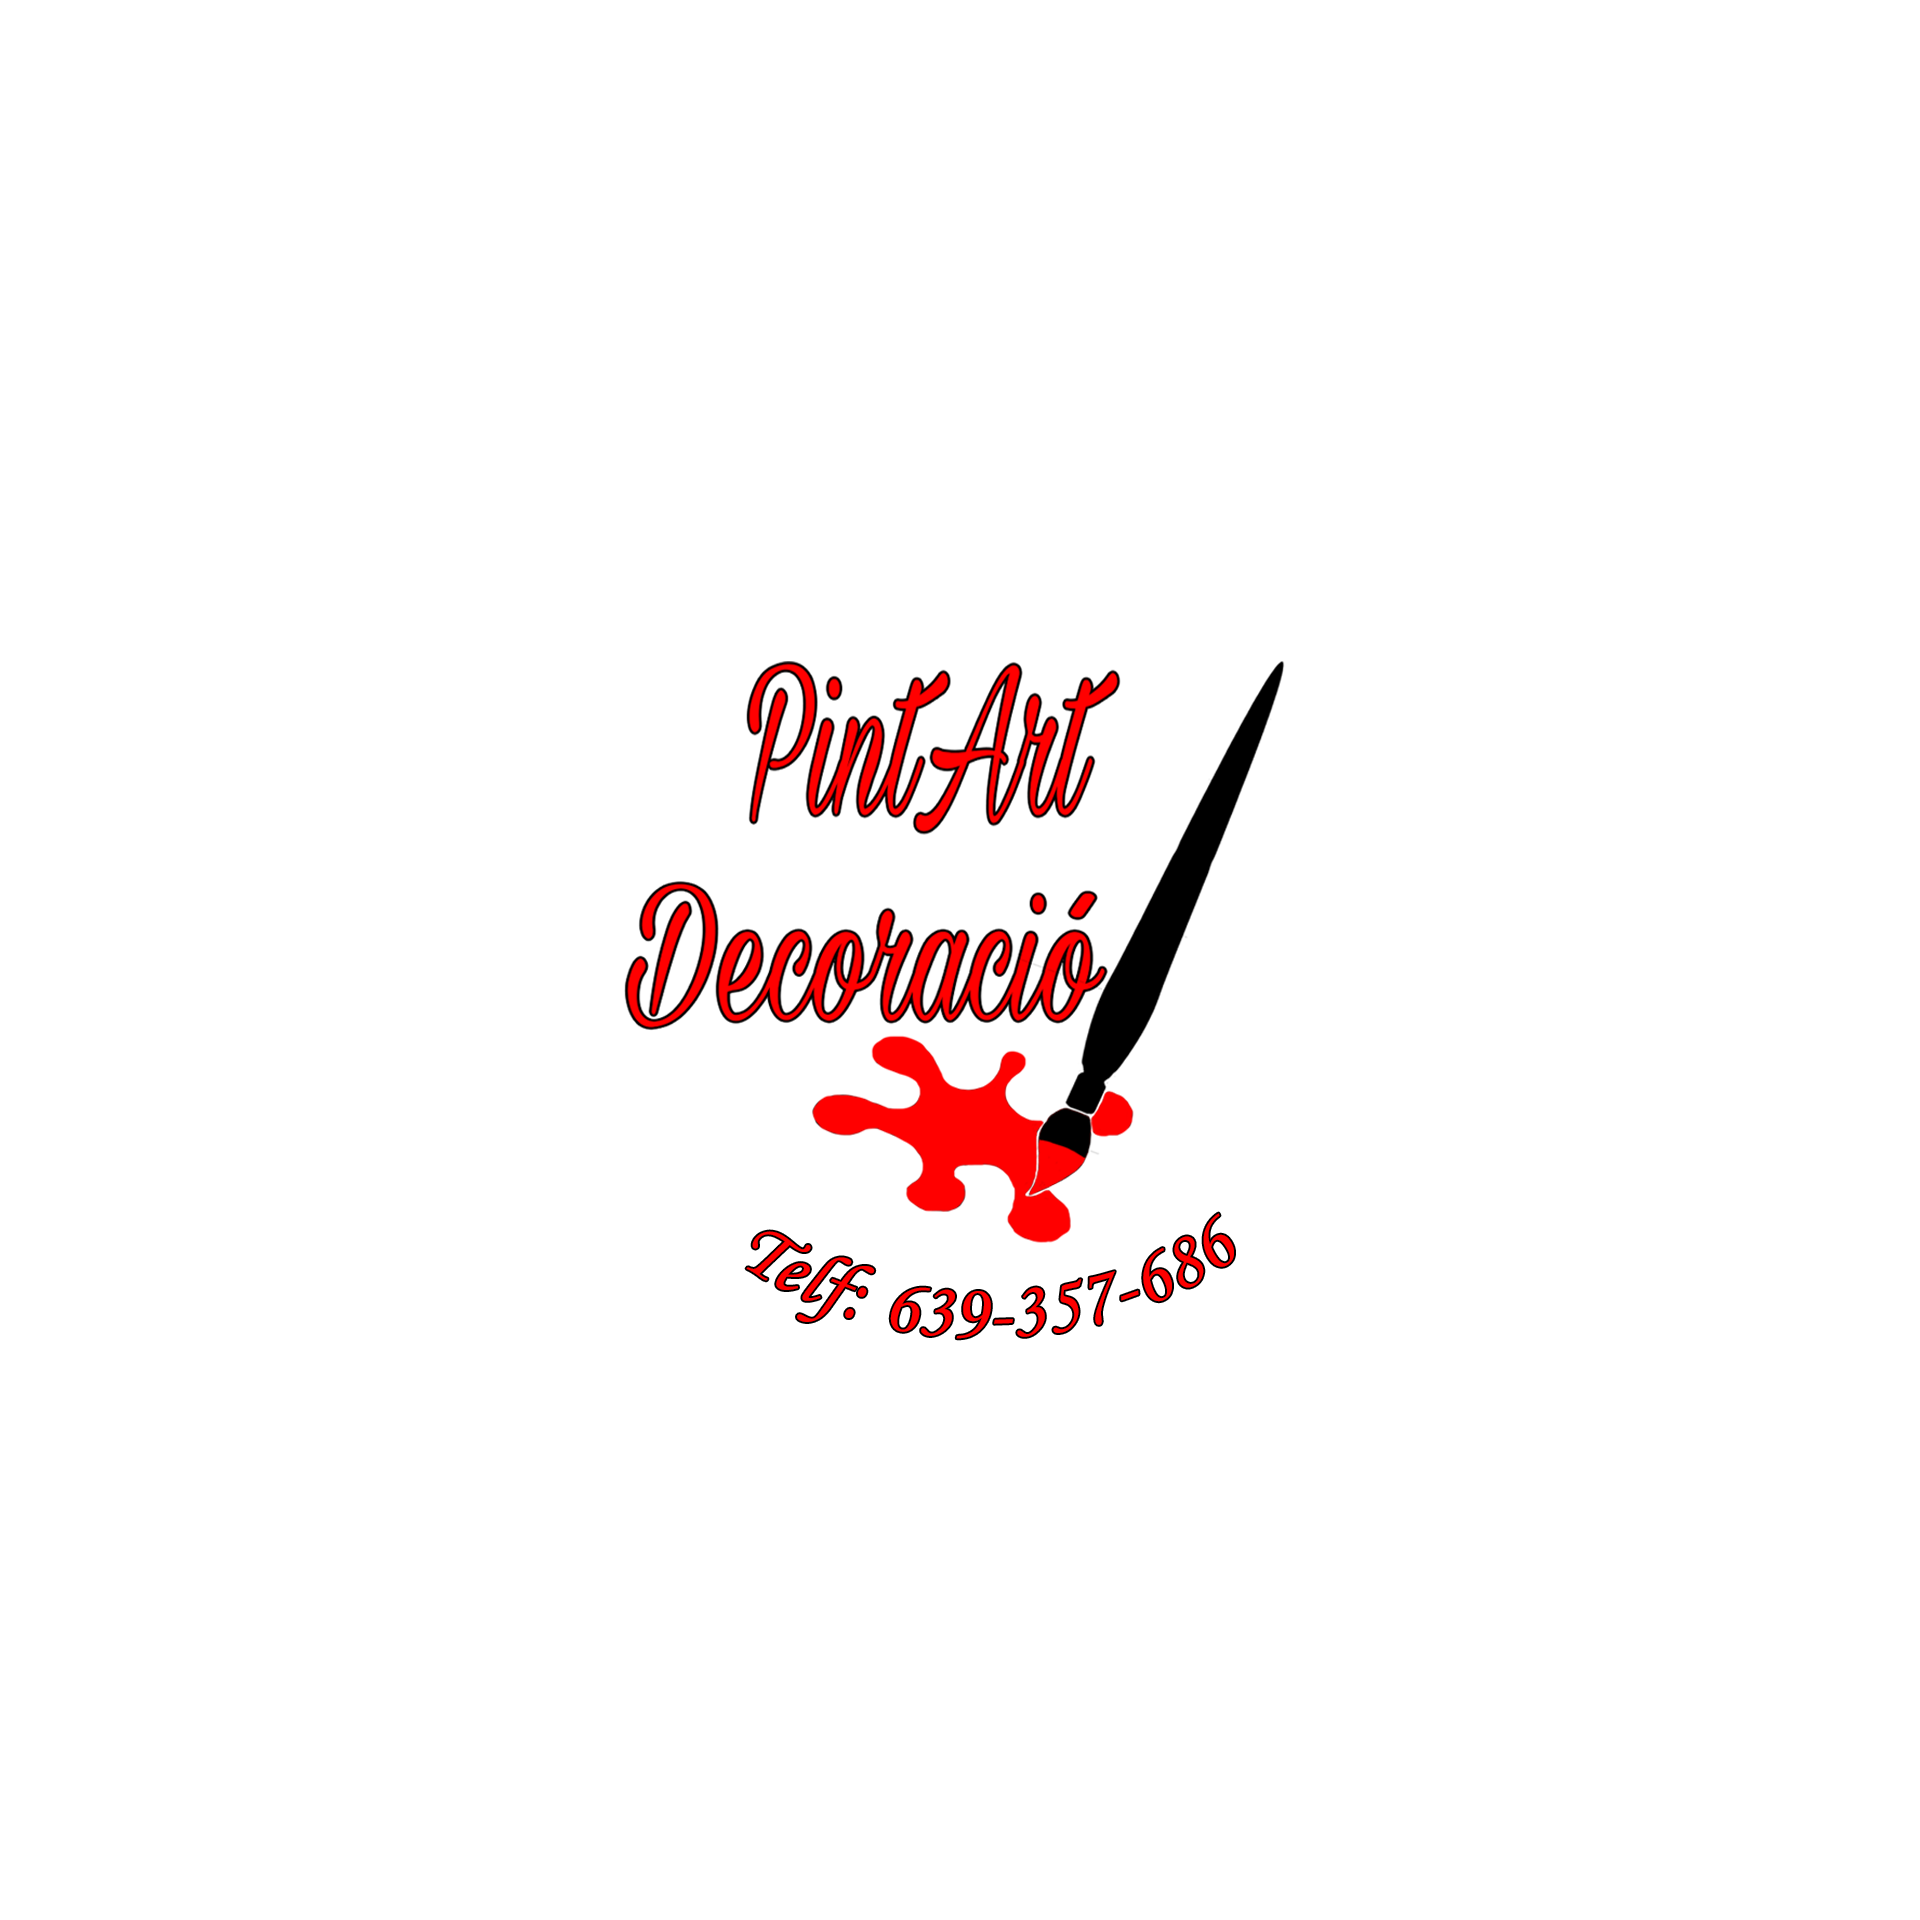 PintArt Decoració i Microcemento Logo